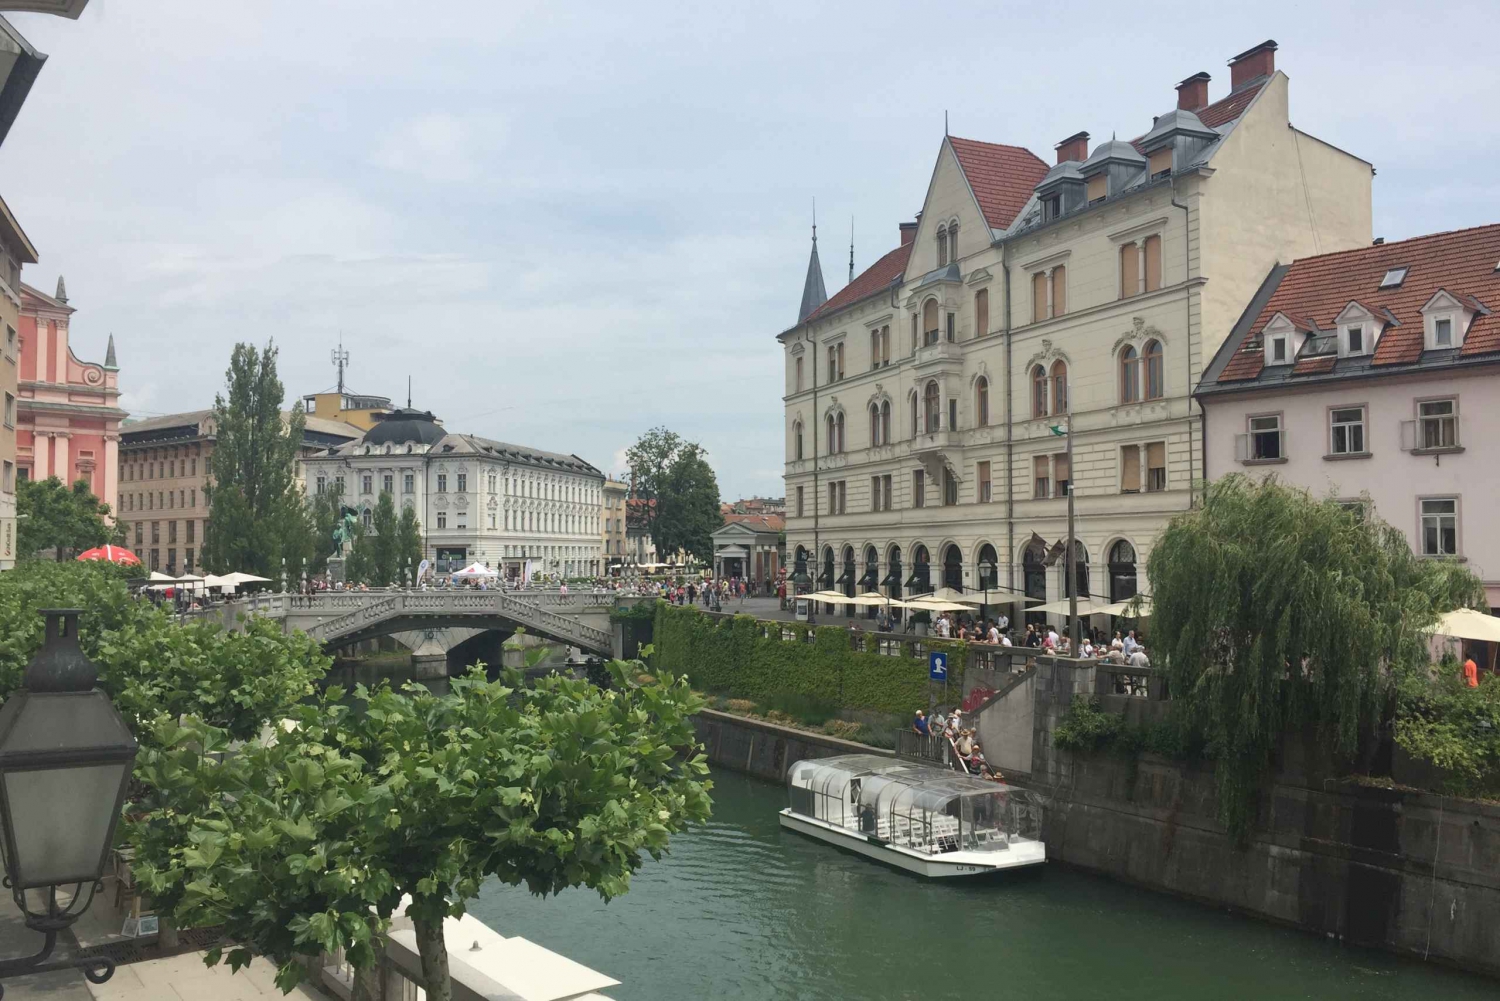 Full-Day Ljubljana and Lake Bled Trip from Zagreb